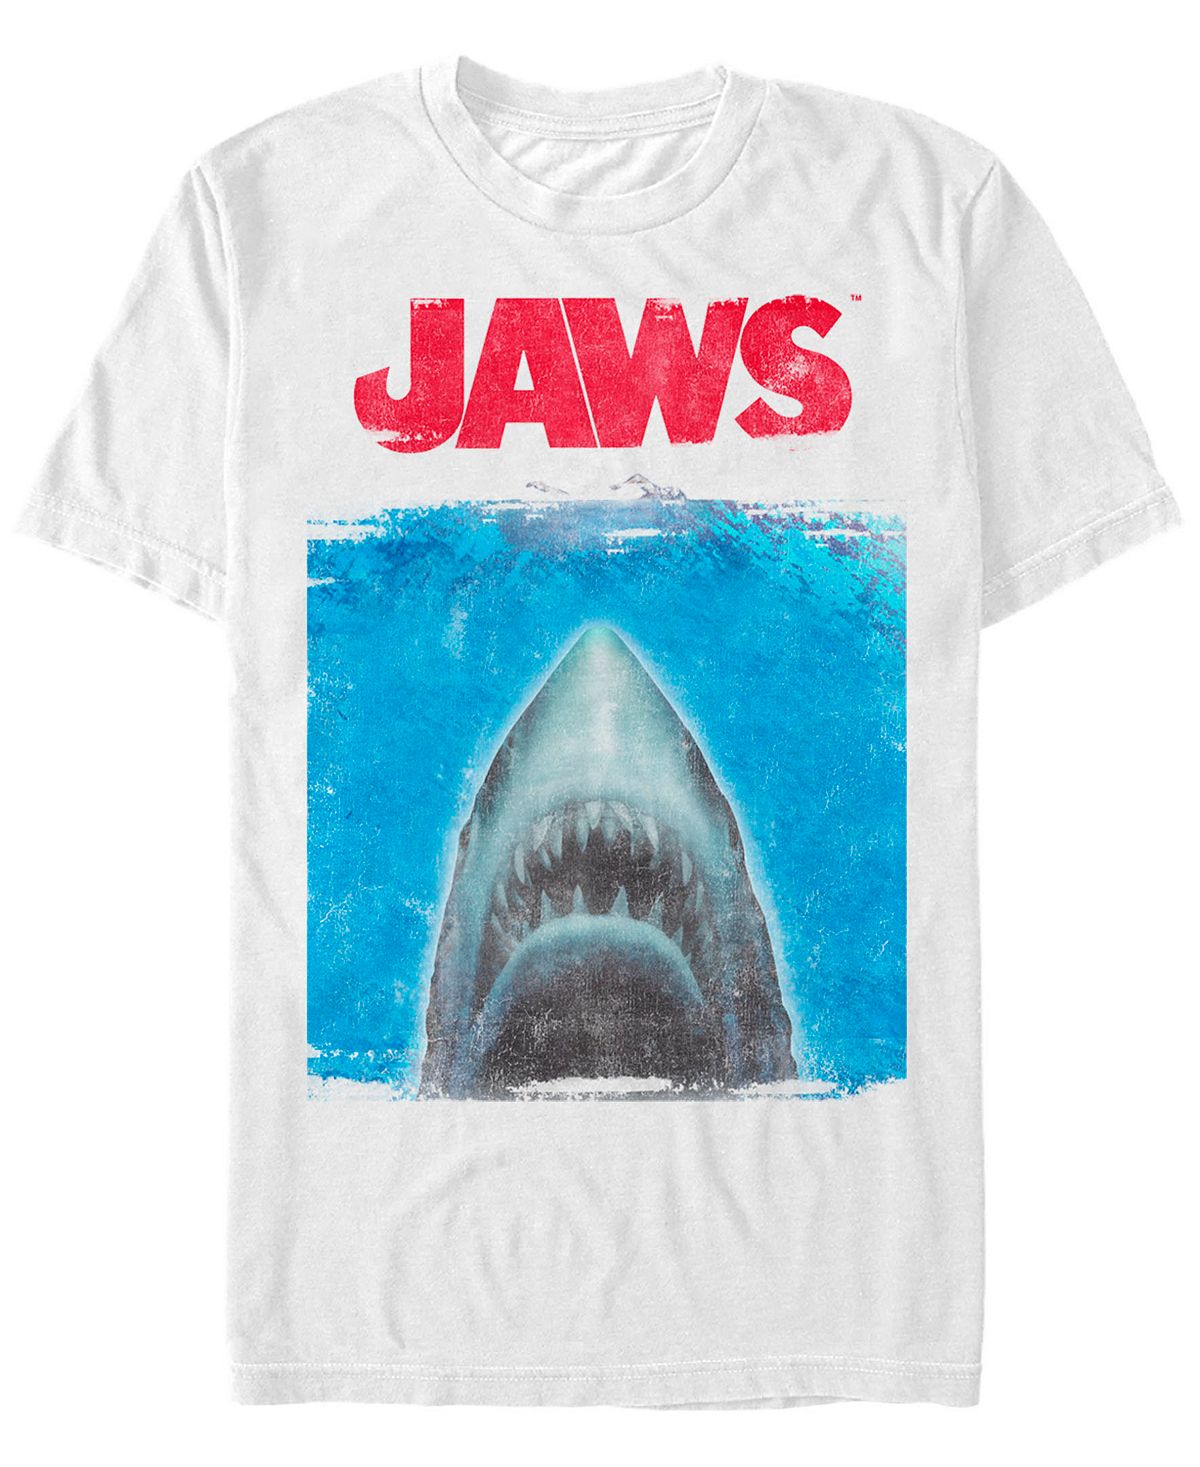 Мужская футболка с короткими рукавами с изображением акулы «челюсти» Fifth Sun, белый челюсти фигурка куинт и большая белая акула